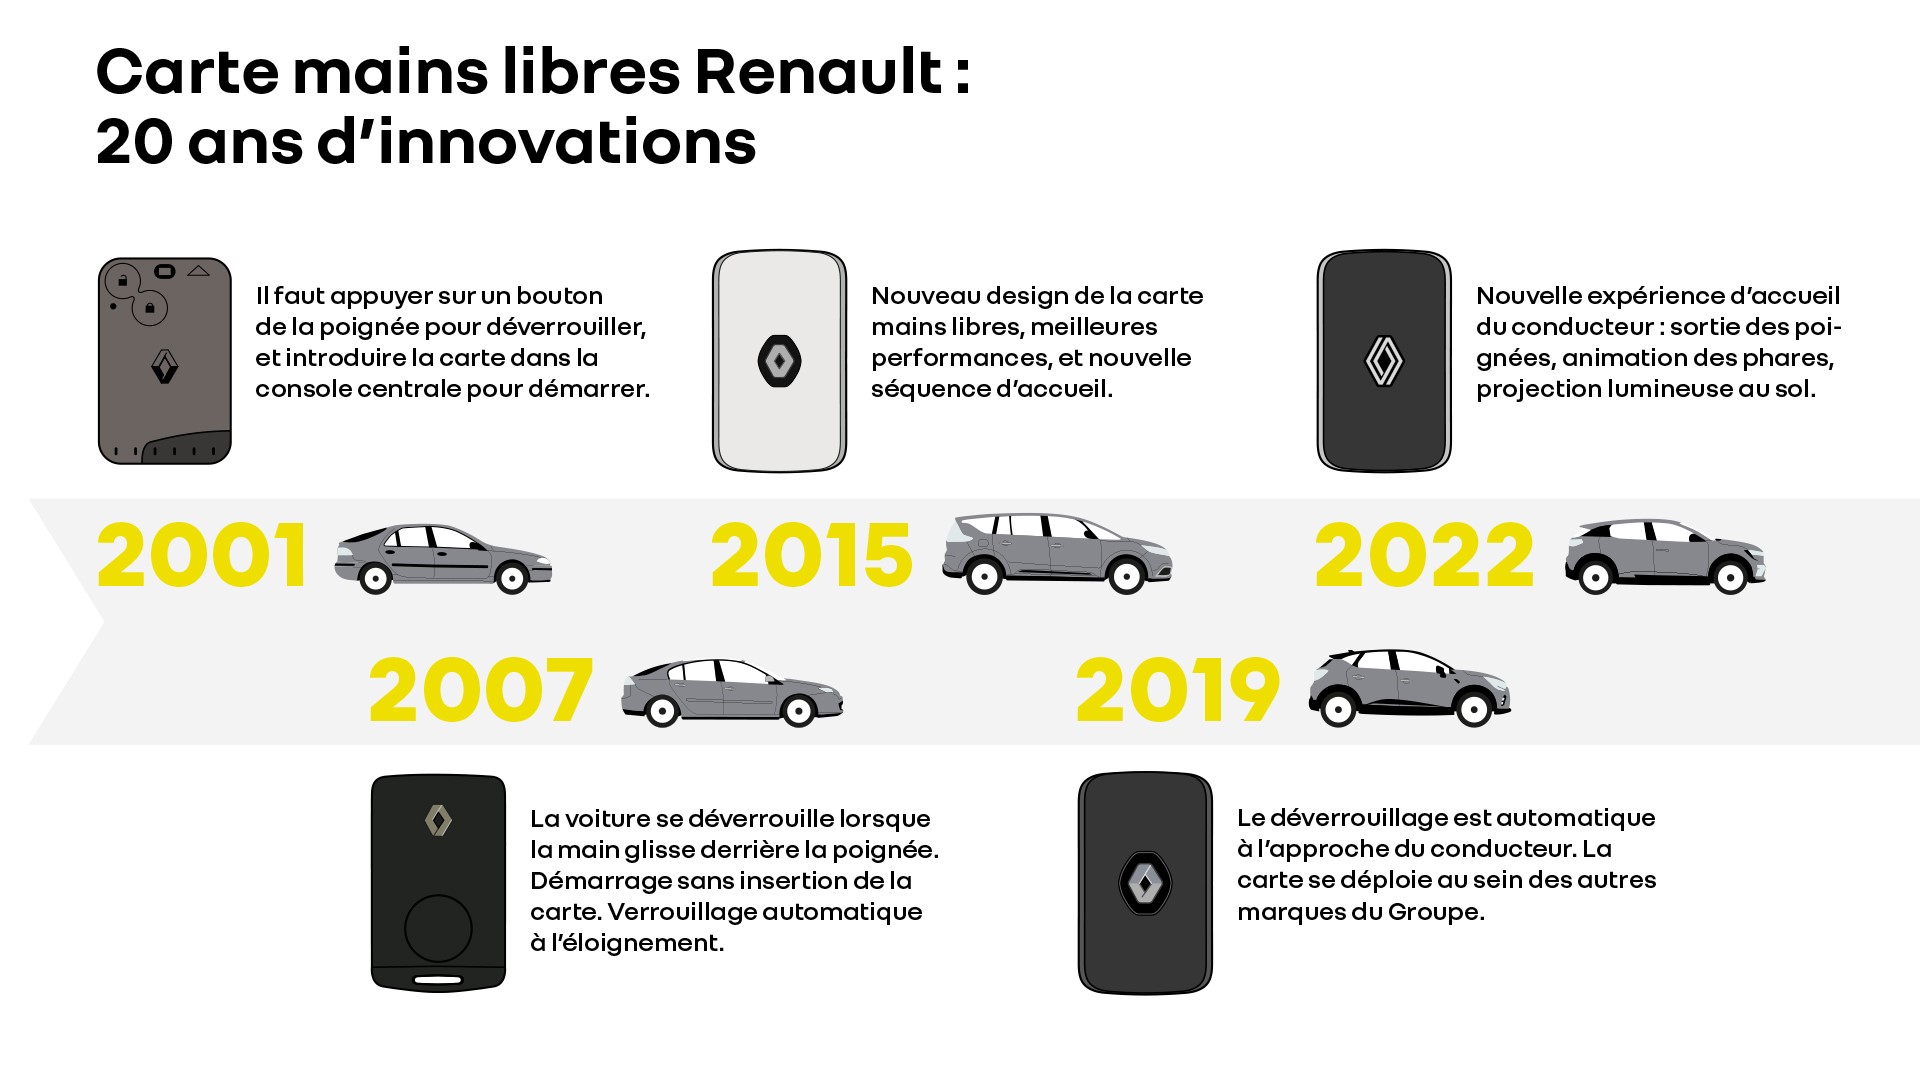 La carte mains libres fête ses 20 ans chez Renault ! - Renault Group